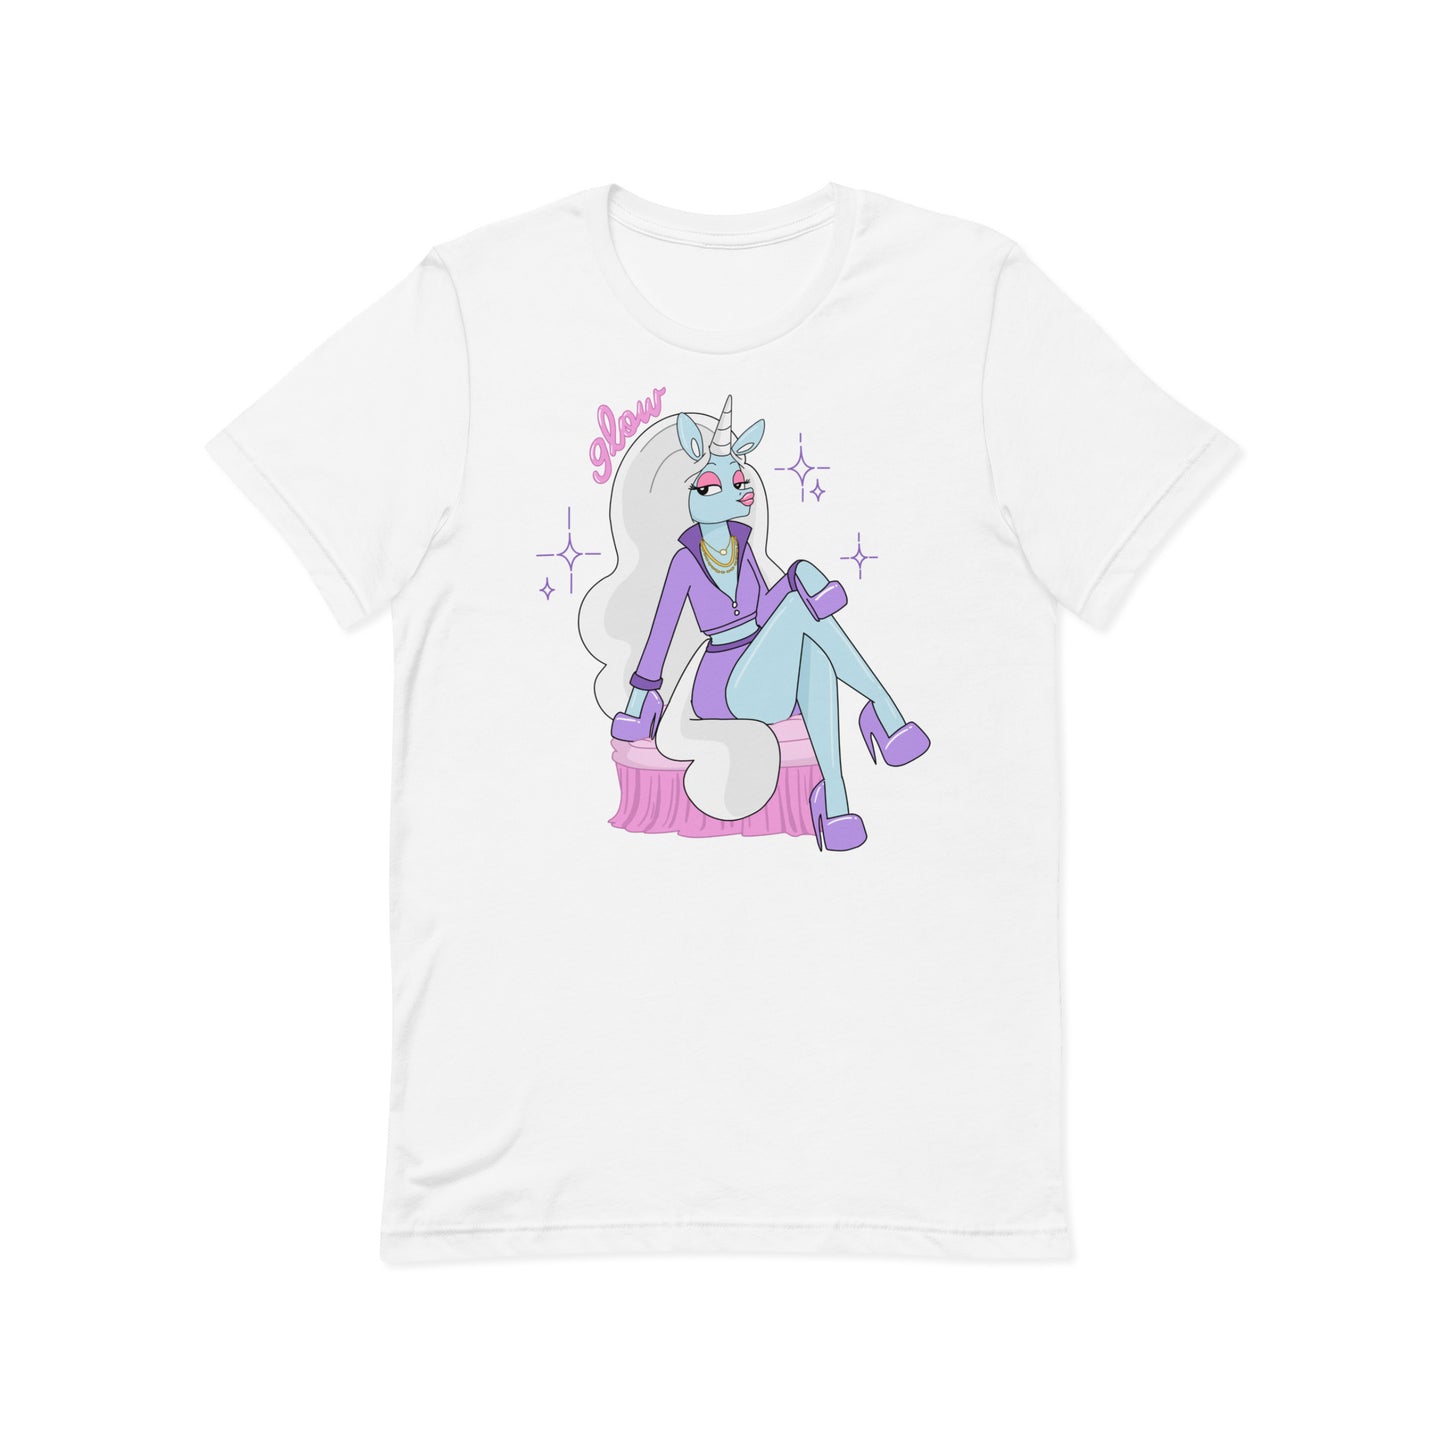 stunning unicorn shirt in white front